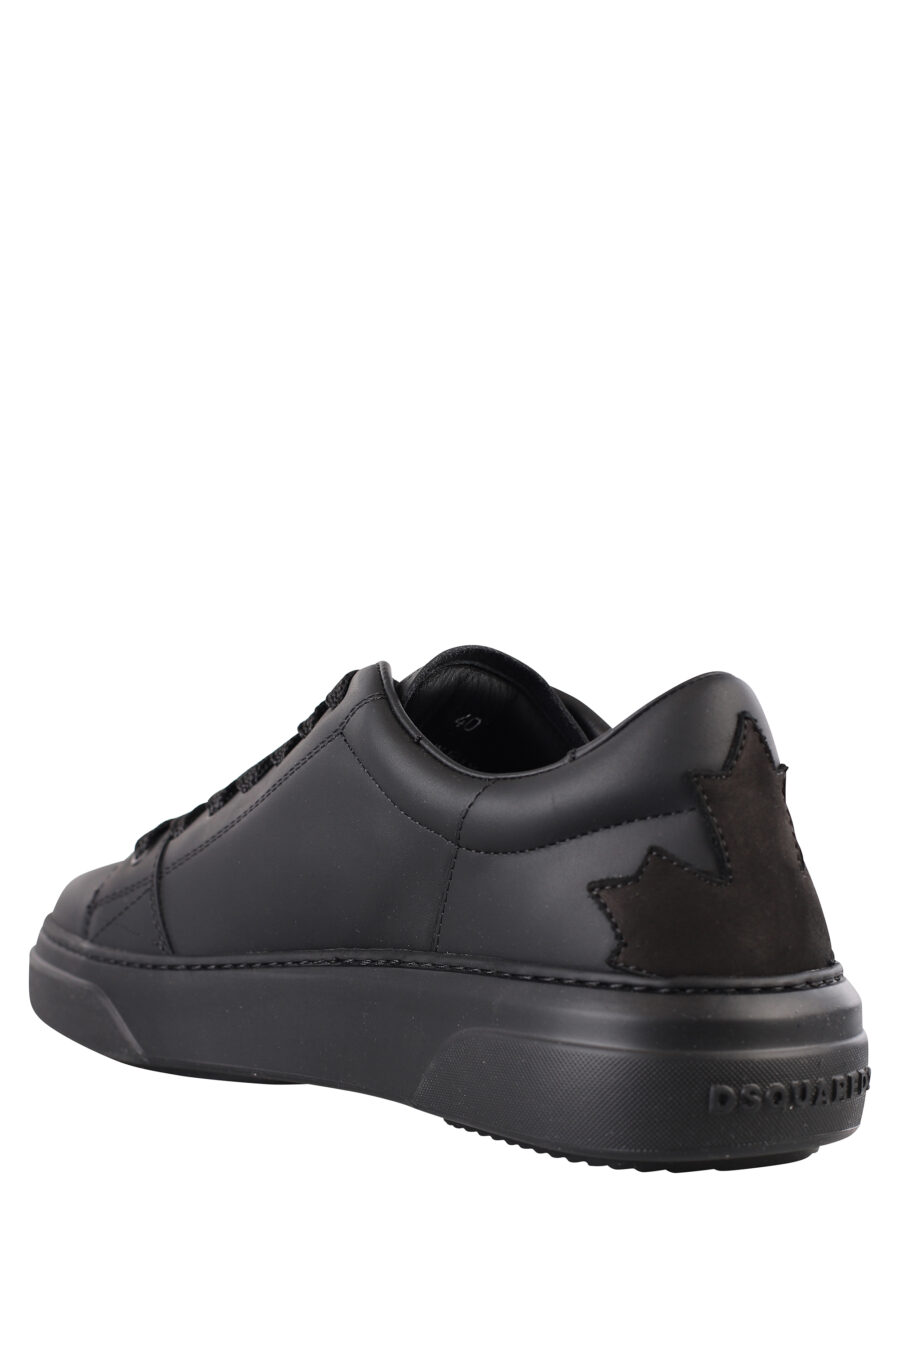 Zapatillas negras con logo blanco pequeño y suela negra - IMG 1150